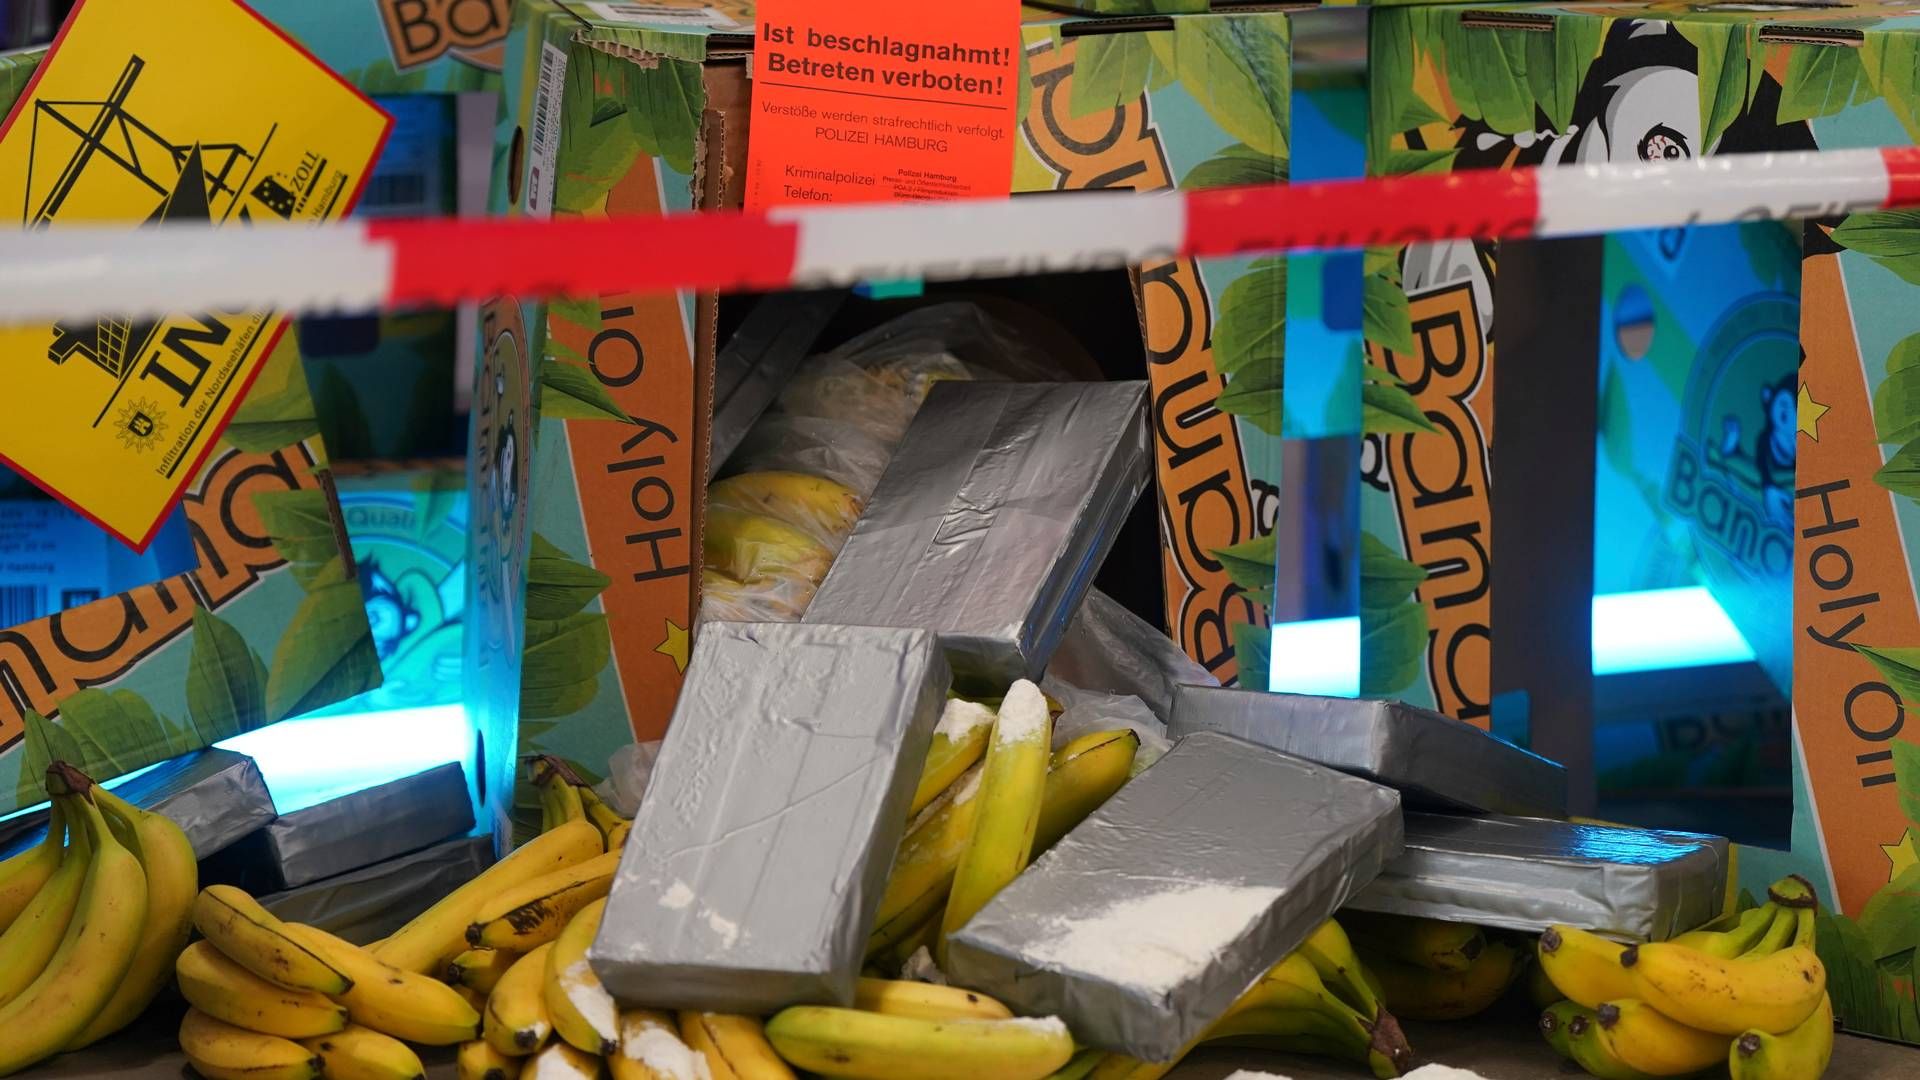 Anonyme grå pakker blandt bananer - foto fra en kampagne for at skabe opmærksomhed om narkosmugling blandt tyske havnearbejdere. | Foto: Marcus Brandt/AP/Ritzau Scanpix